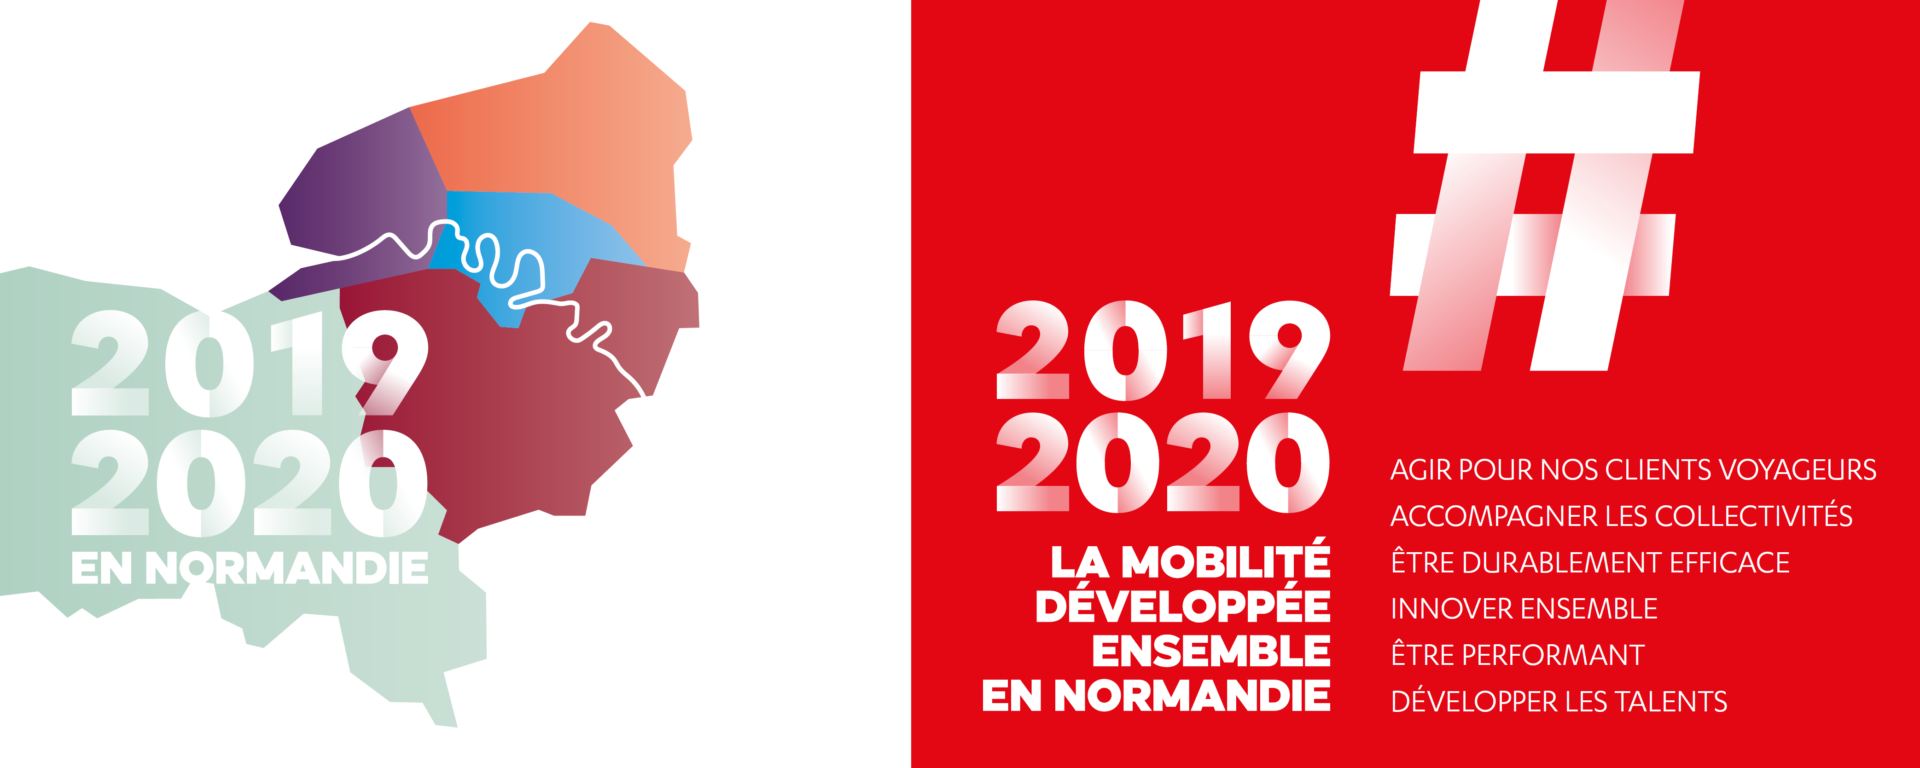 Transdev normandie 2019-2020